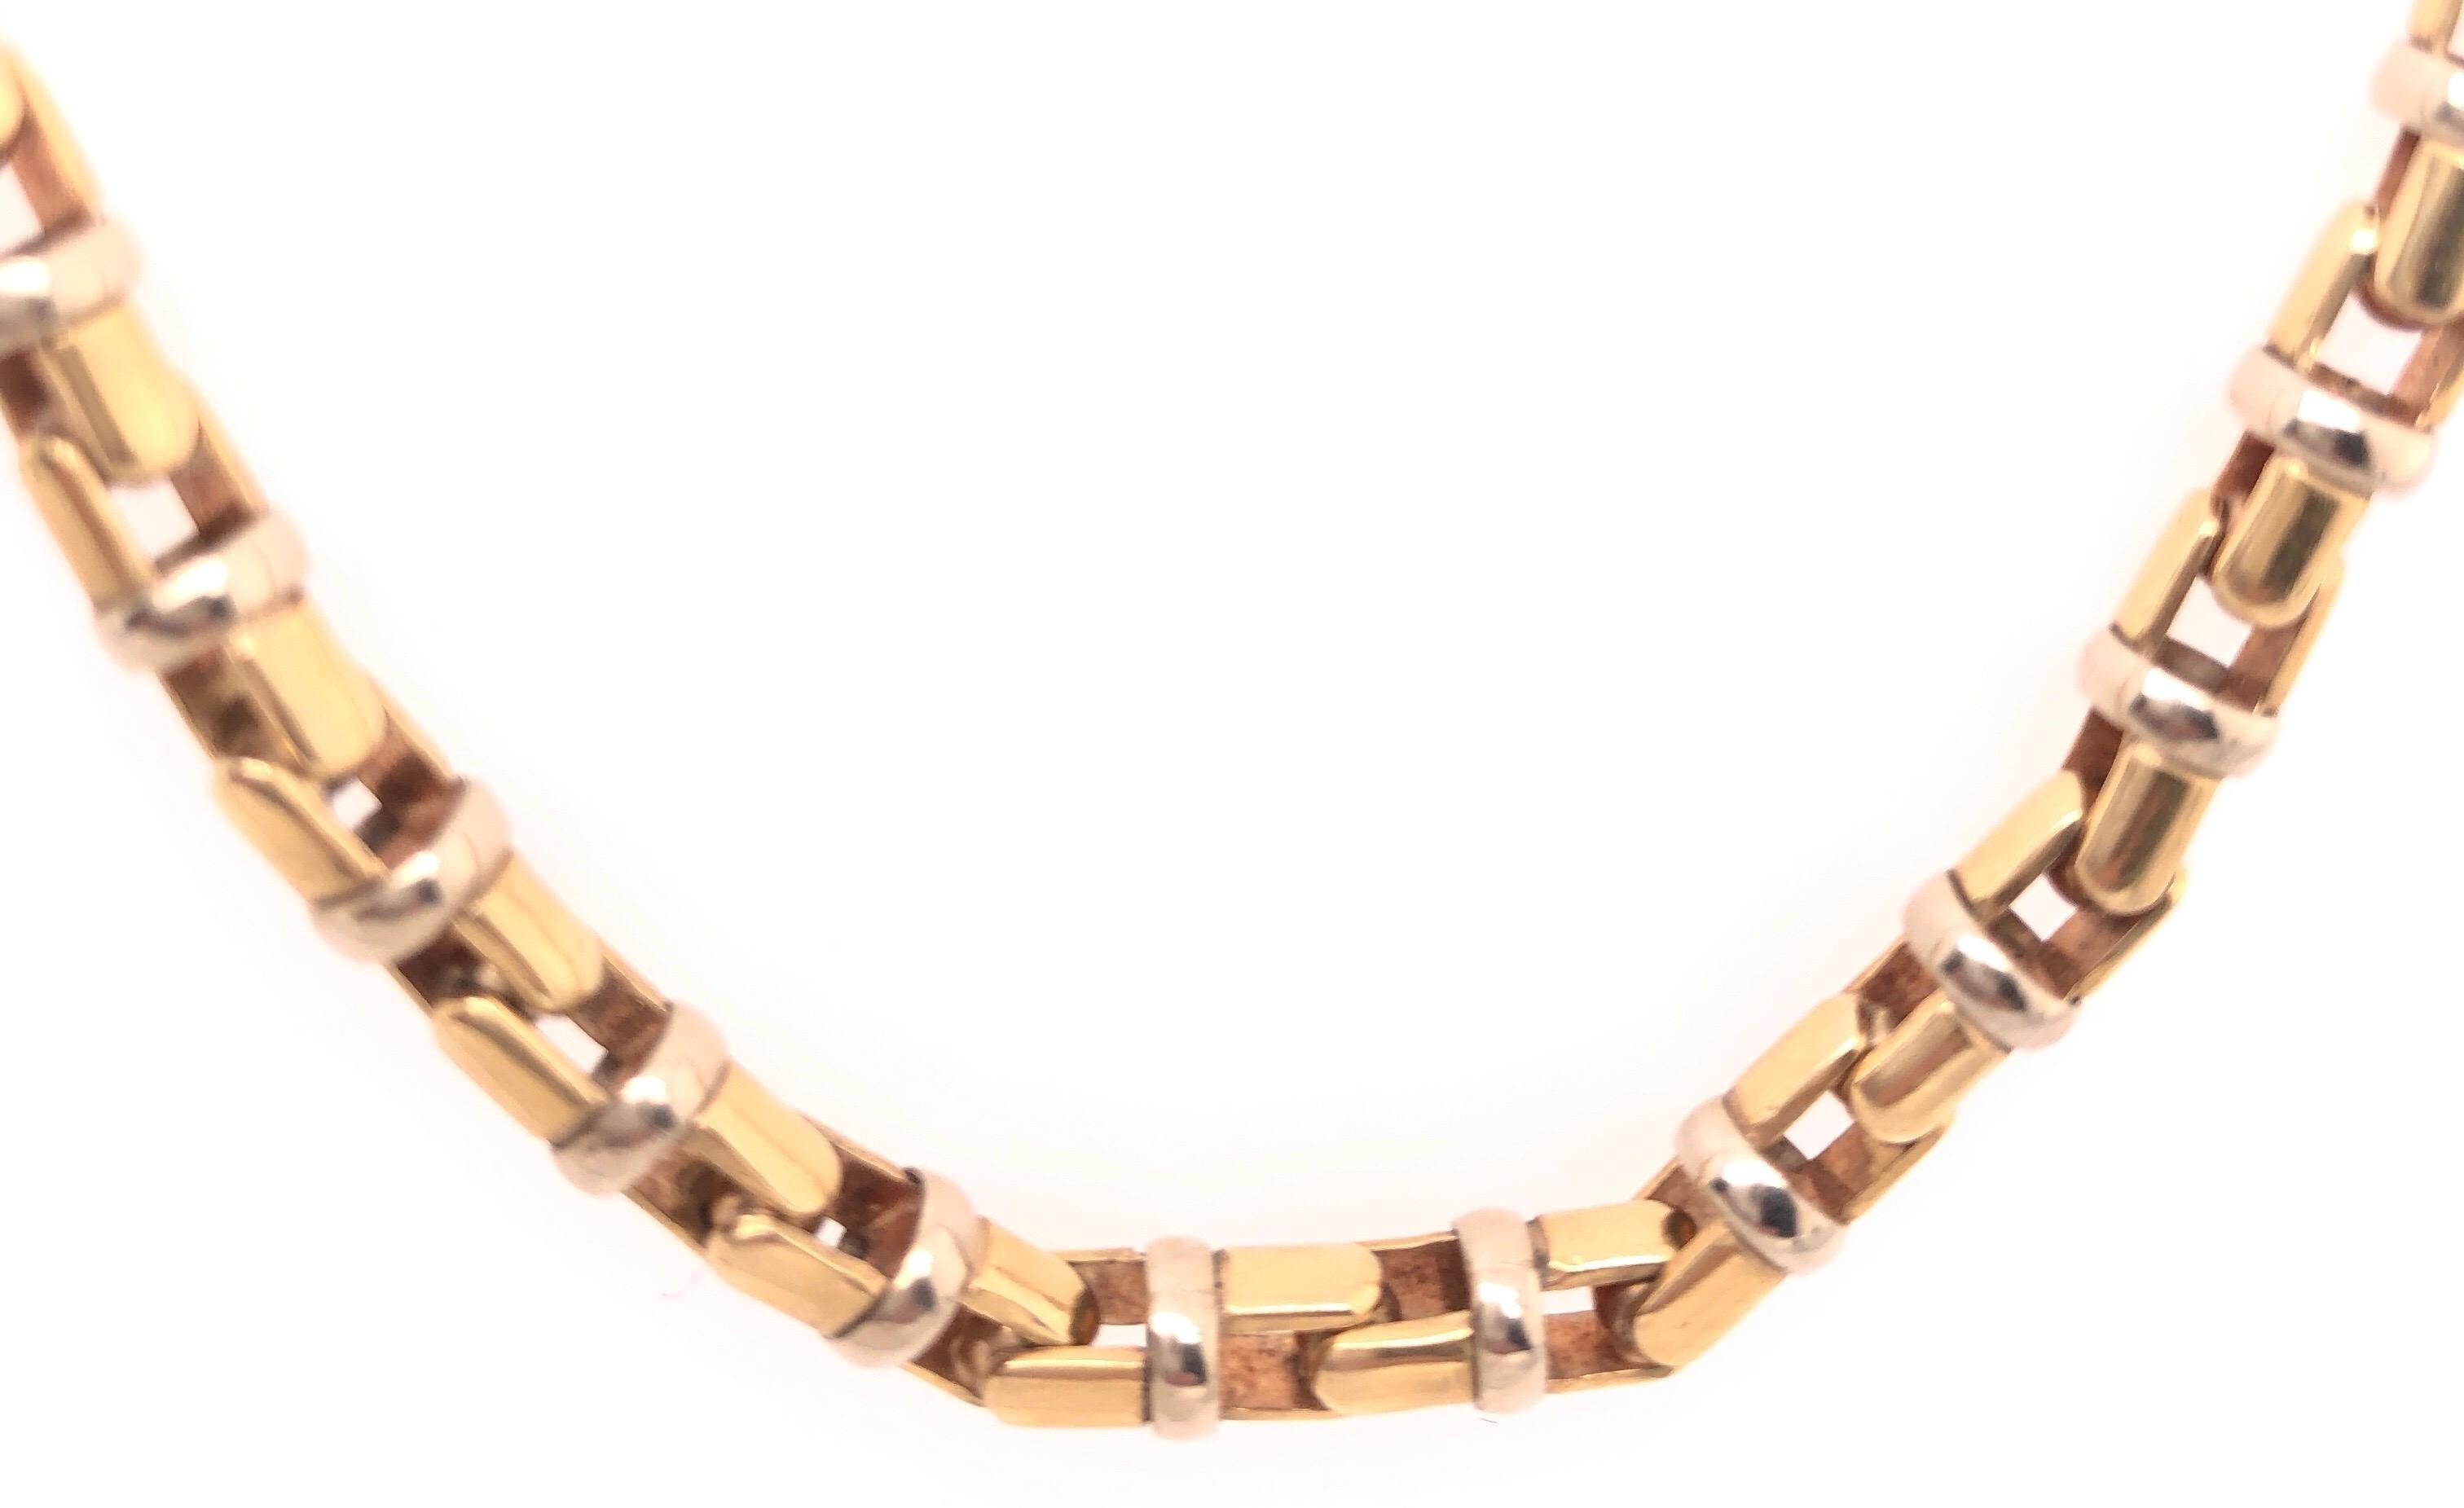 14 Karat Gelb- und Weißgold 22,5 Zoll Baraka Brev Luxus schwere Link Halskette.
Markiert Baraka Brev, mit einer Krabbenschließe. Dieser Artikel hat heute, am 1. Mai 2020, einen Schrottwert von fast 4600 Dollar.
48,7 Gramm Gesamtgewicht.

